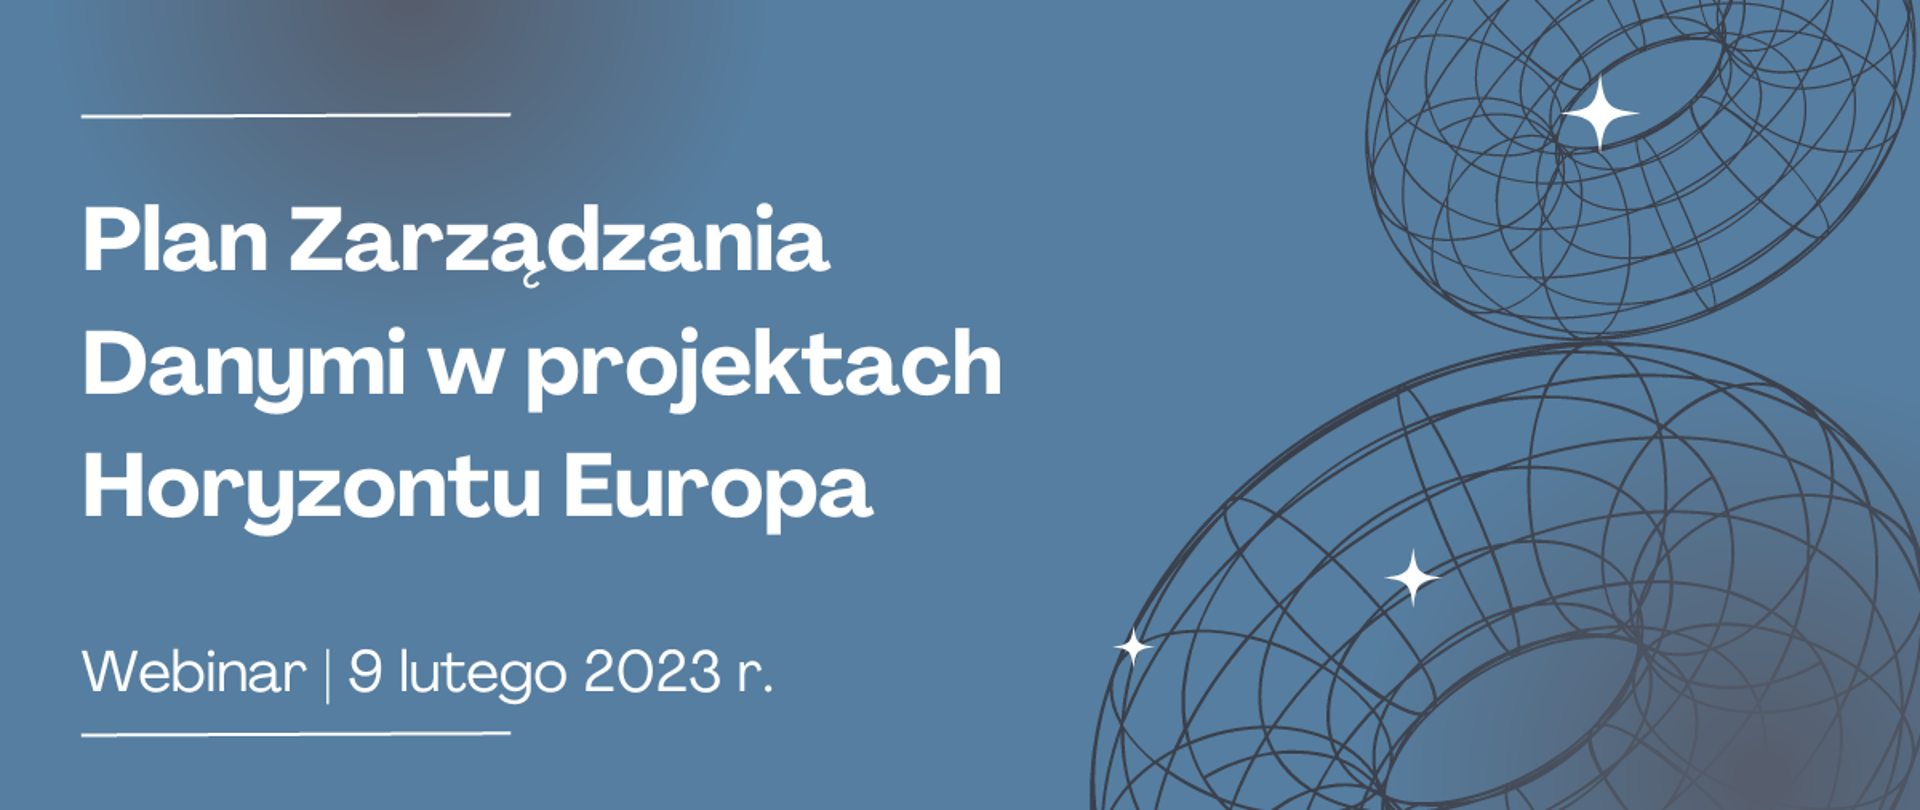 Plan Zarządzania Danymi w projektach Horyzontu Europa (1200×507 px)